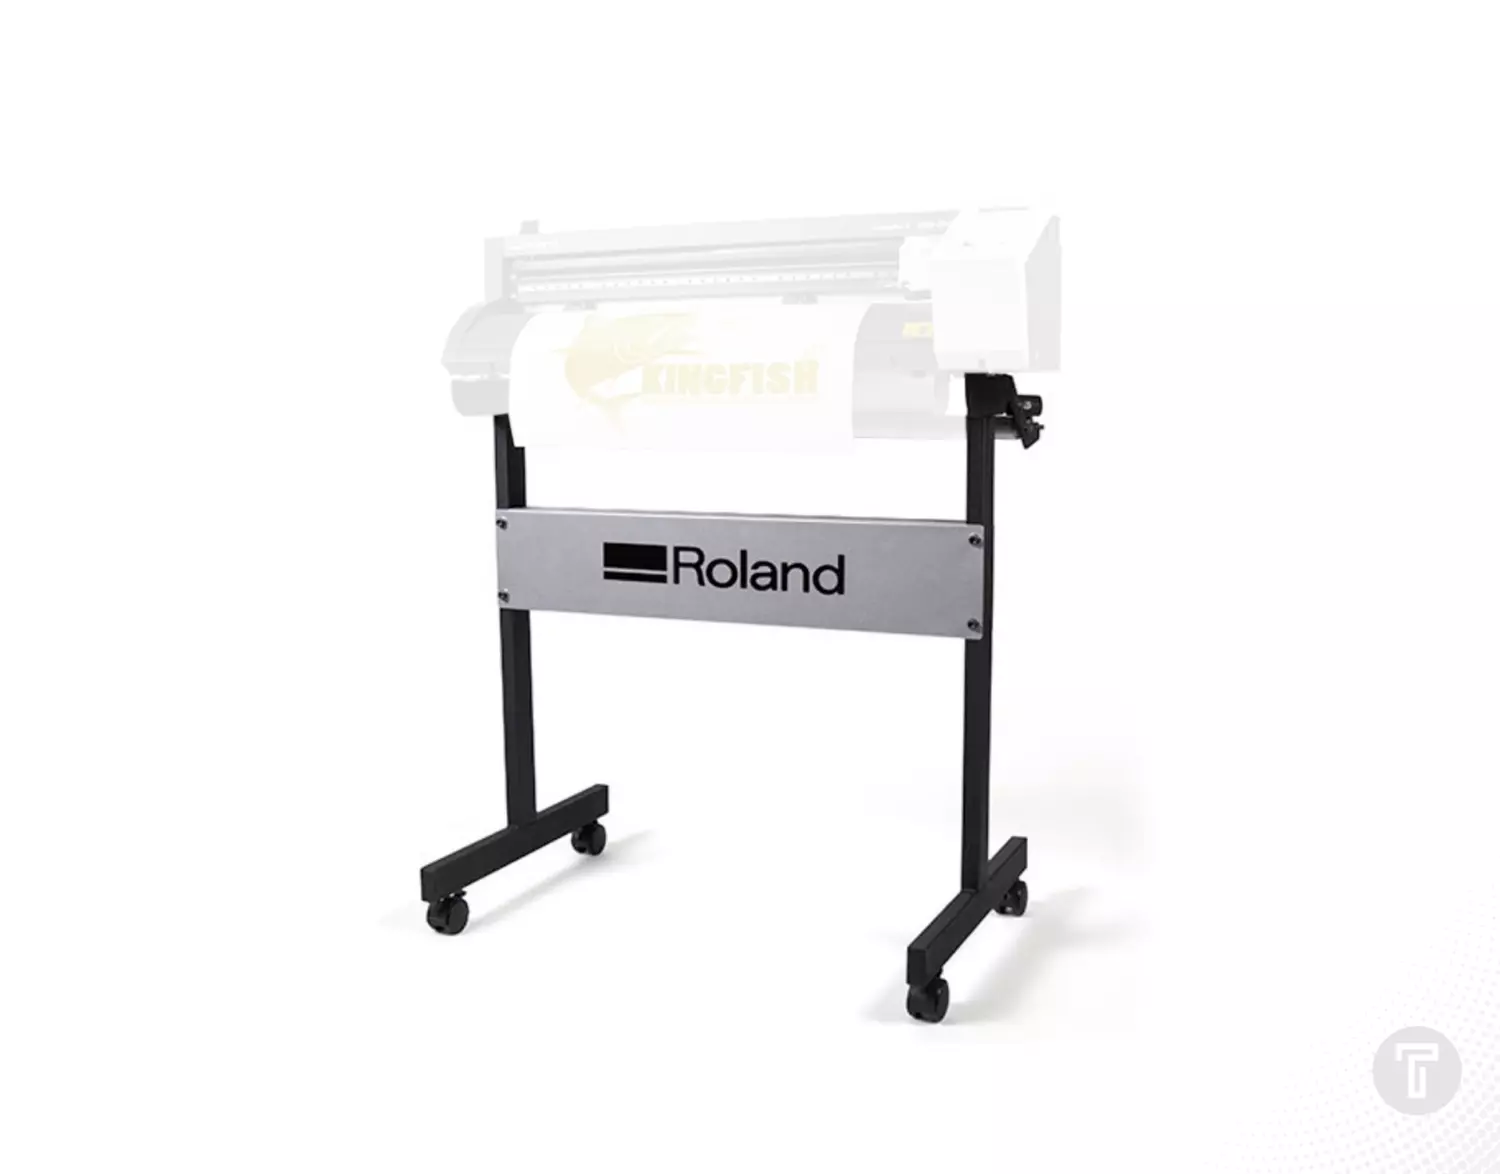 Roland camm 1 gs 24 snijplotter stand standaard